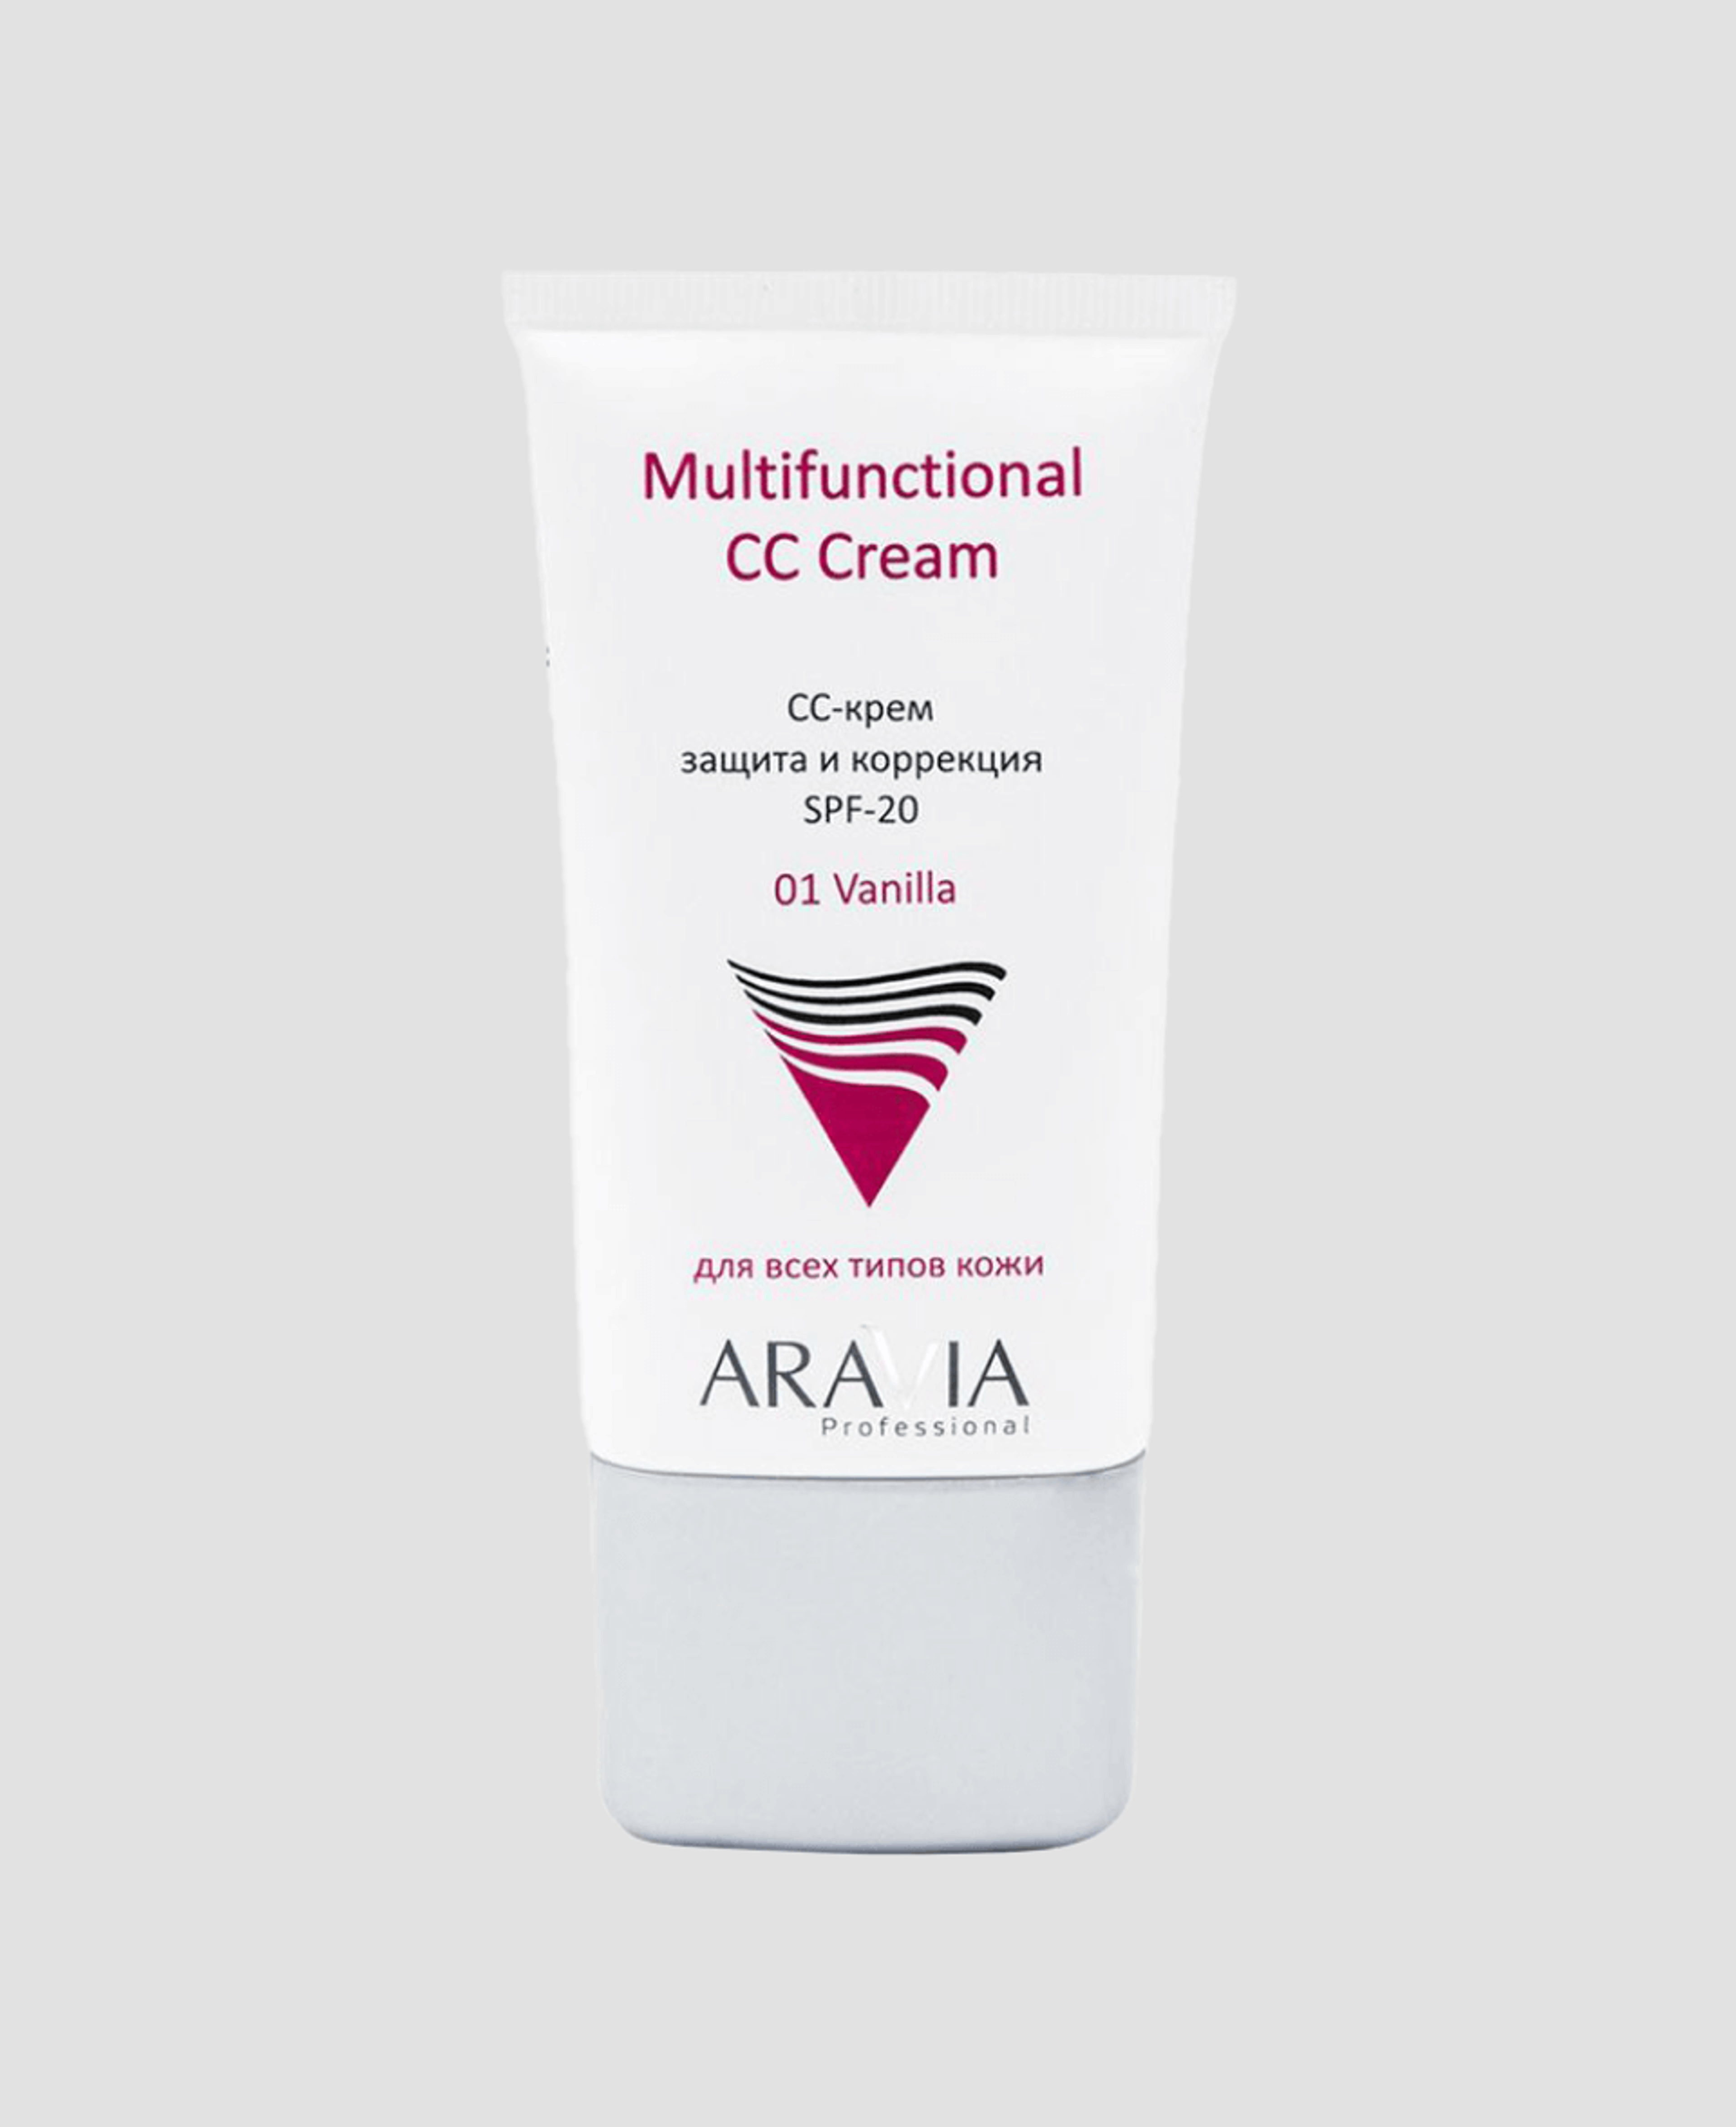 CC-крем Aravia Professional Multifunctional CC Cream 